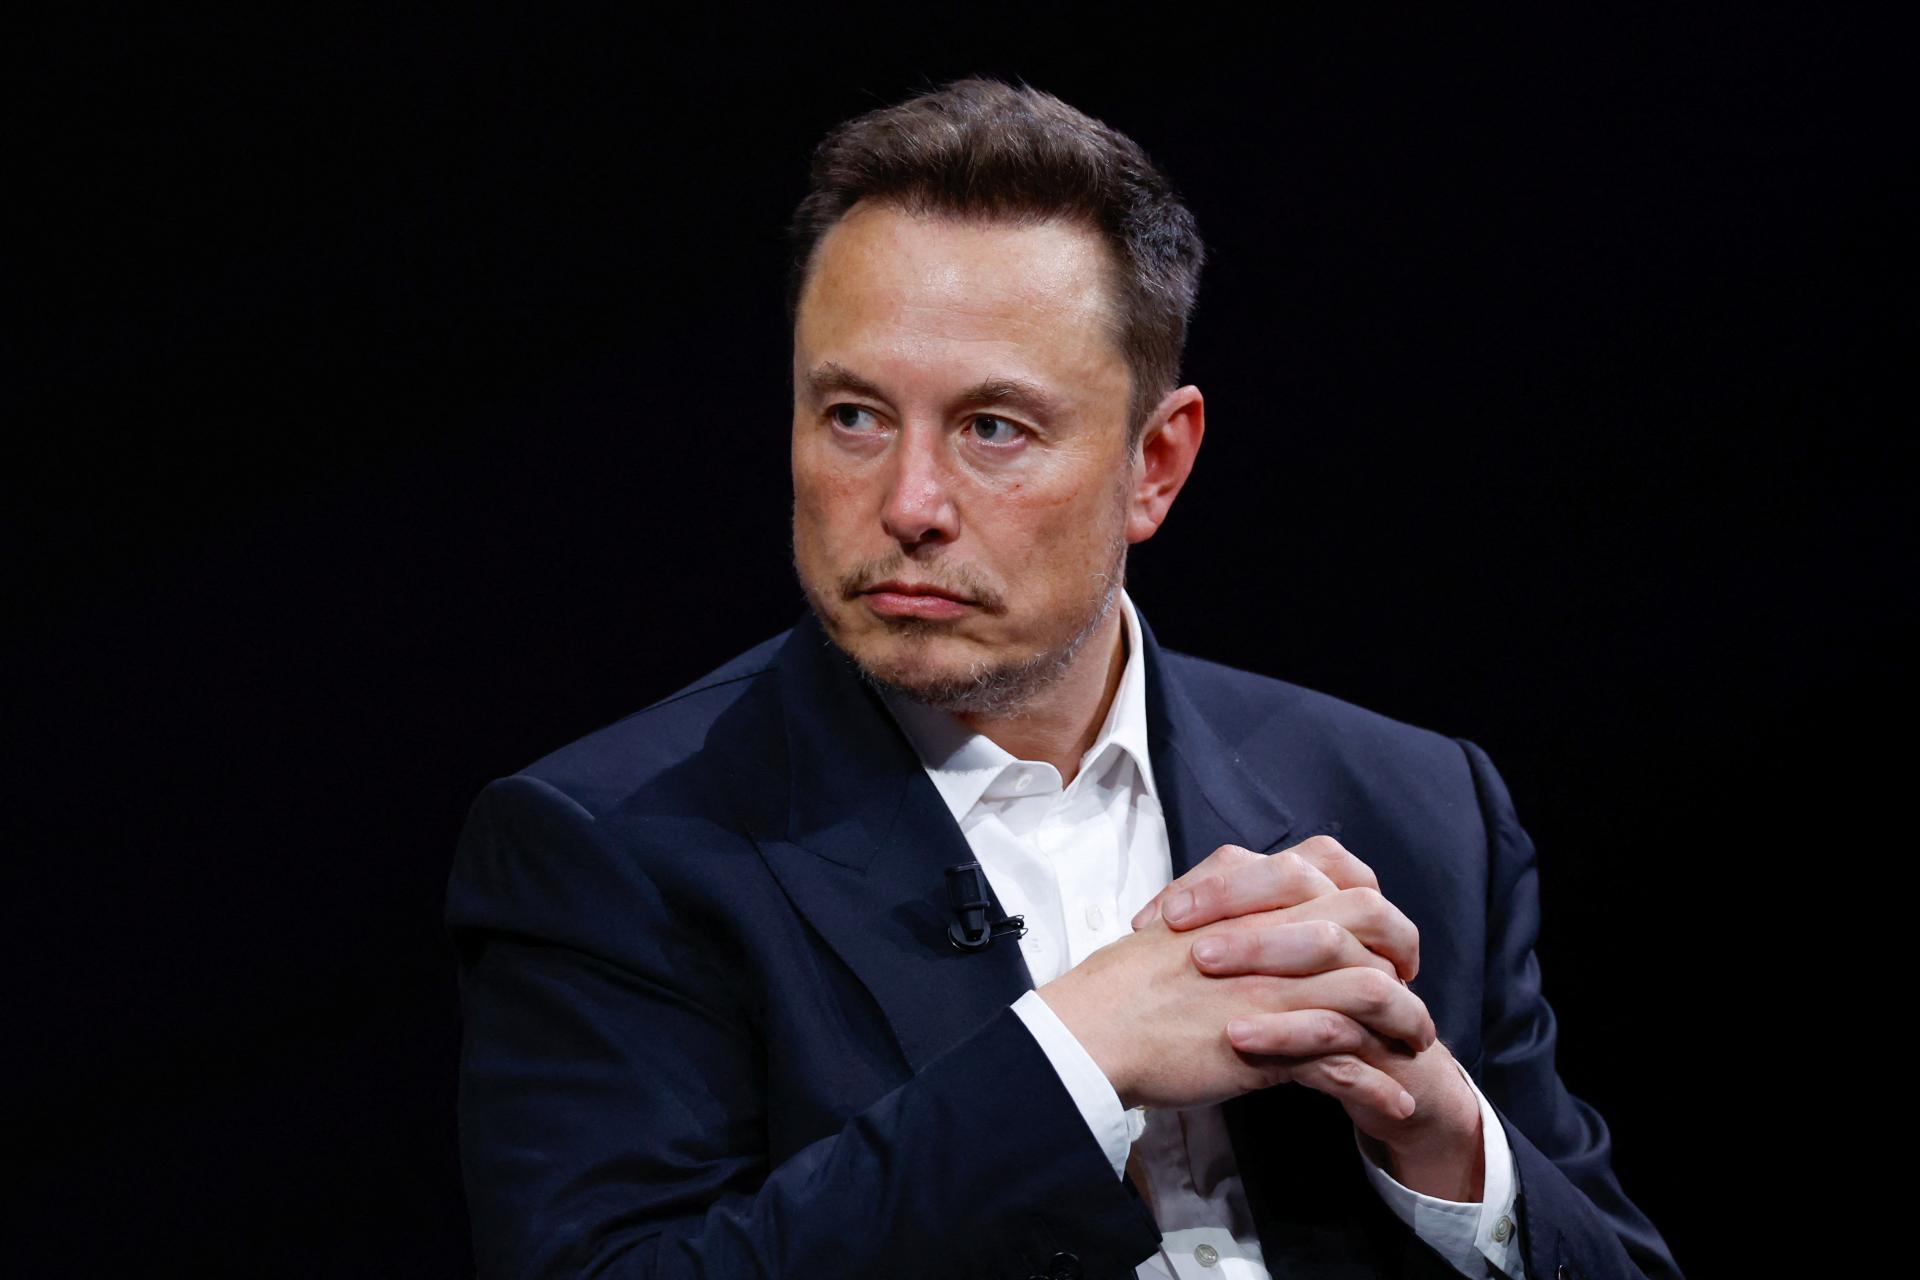 Elon Musk podľa zdrojov zvažuje, že svoju sieť X stiahne z Európskej únie. Nie je to pravda, reaguje